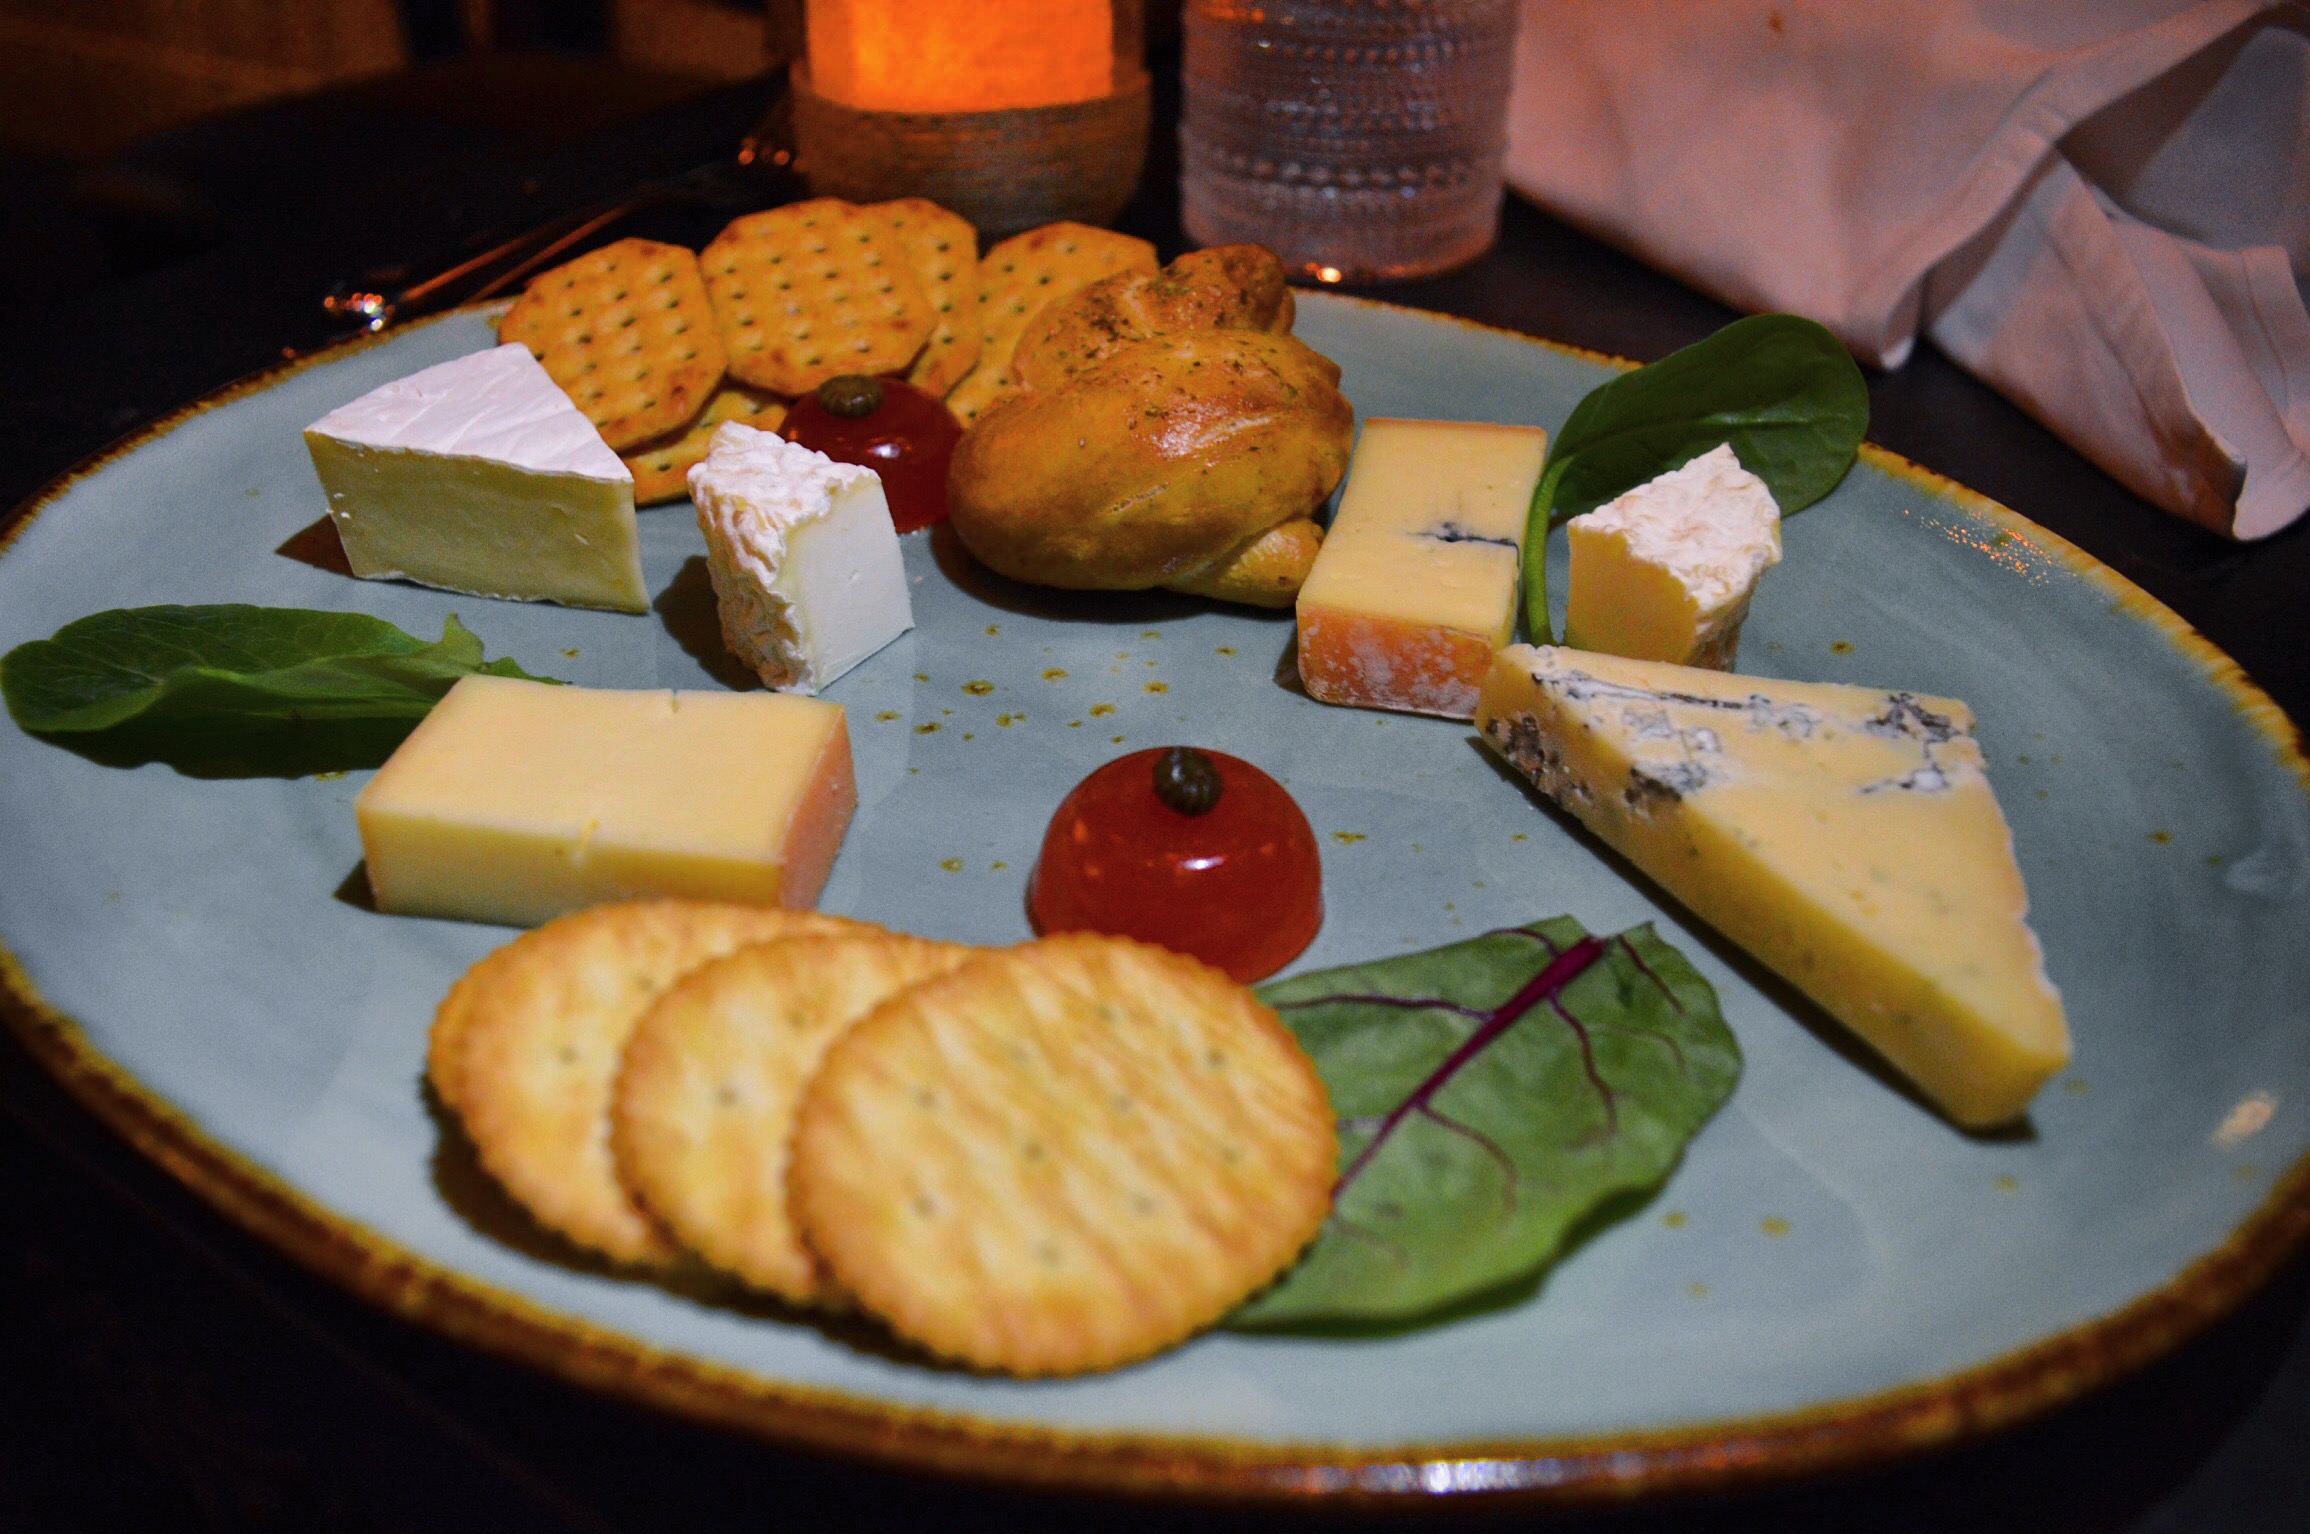 Manoir Richelieu - Cheese platter, dinner menu